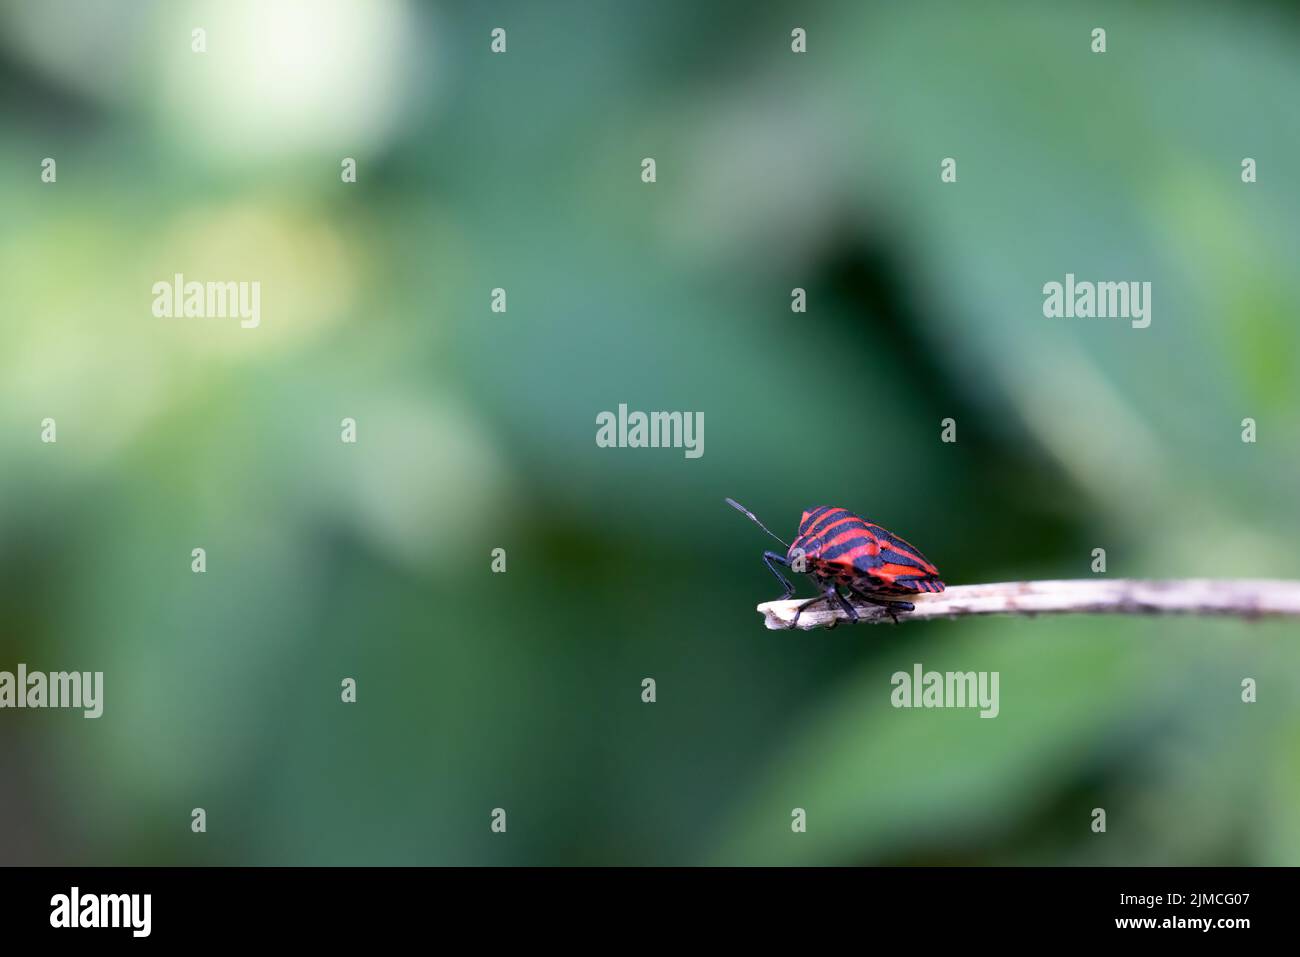 un petit insecte solitaire sur une petite branche dans la lumière du jour attendant des amis. Bouclier rouge et noir, photographie macro Banque D'Images